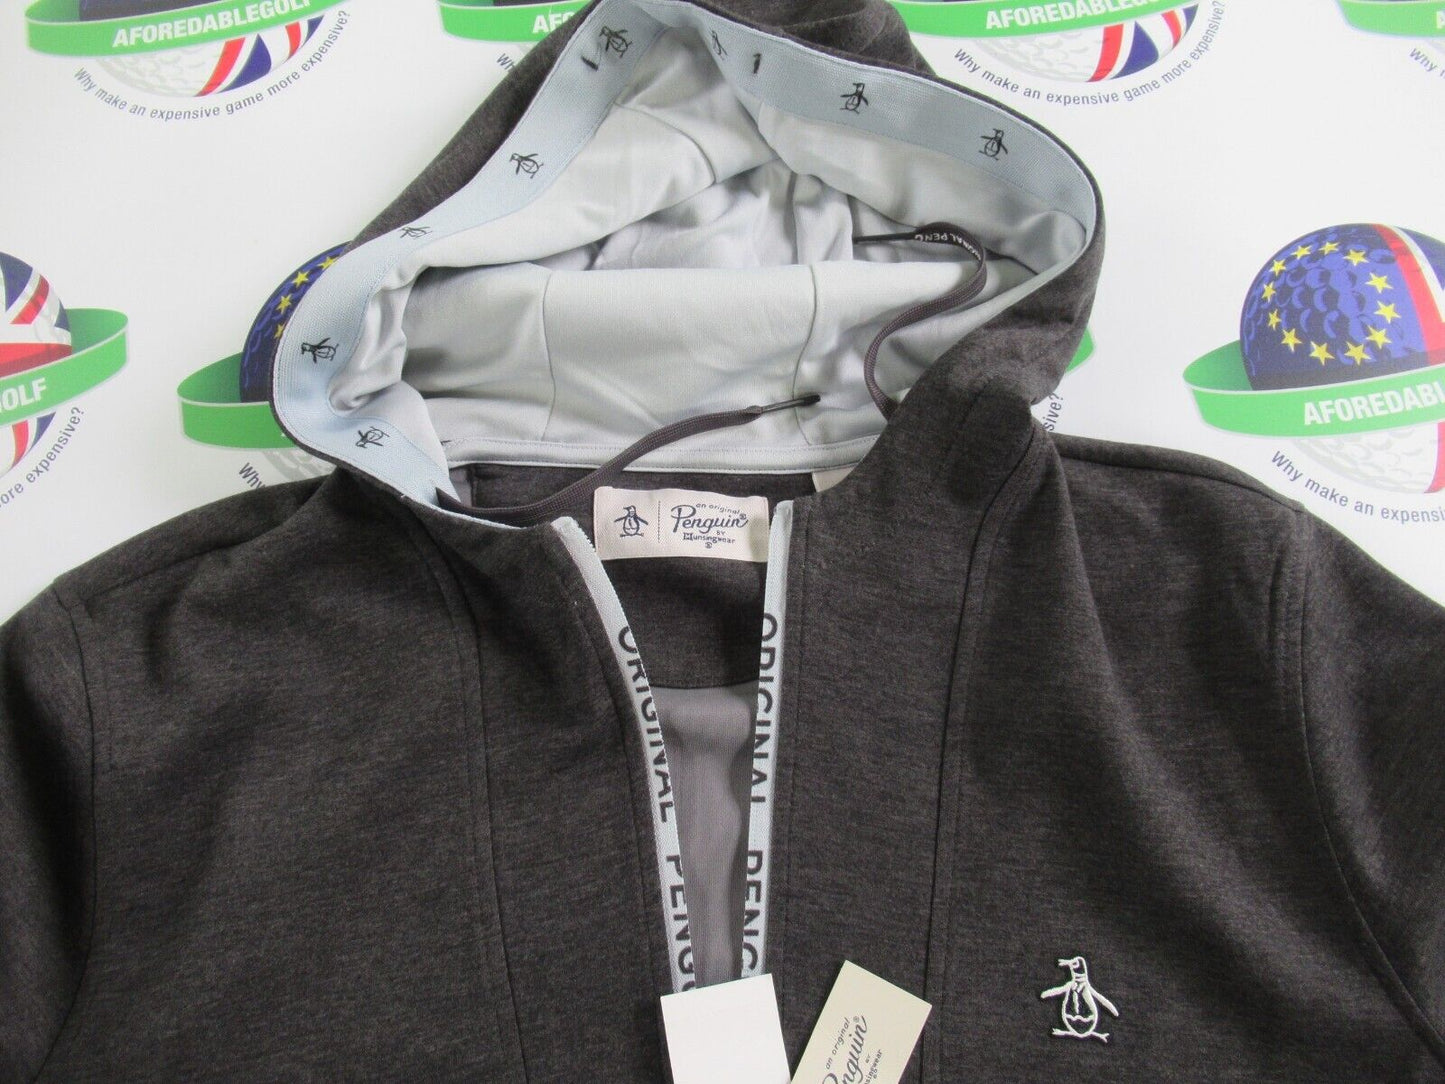 Original Penguin Golf quarter zip performance hooded 1/4 zip top grey large